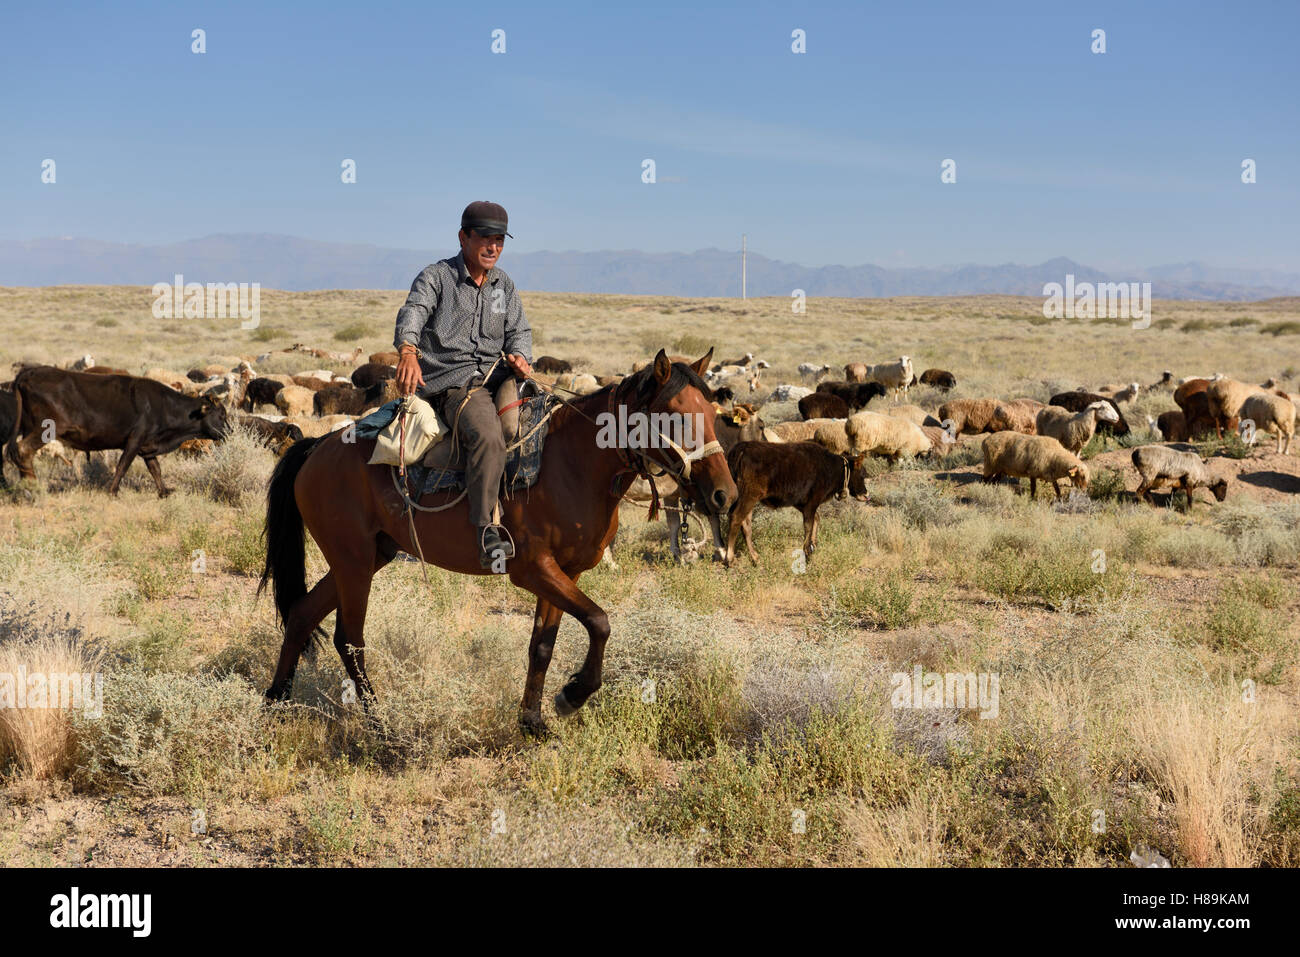 Kasachischen Cowboy zu Pferd herding Rinder und Schafe, die in der Steppe von Kasachstan Zhongar Alatau Gebirge Stockfoto